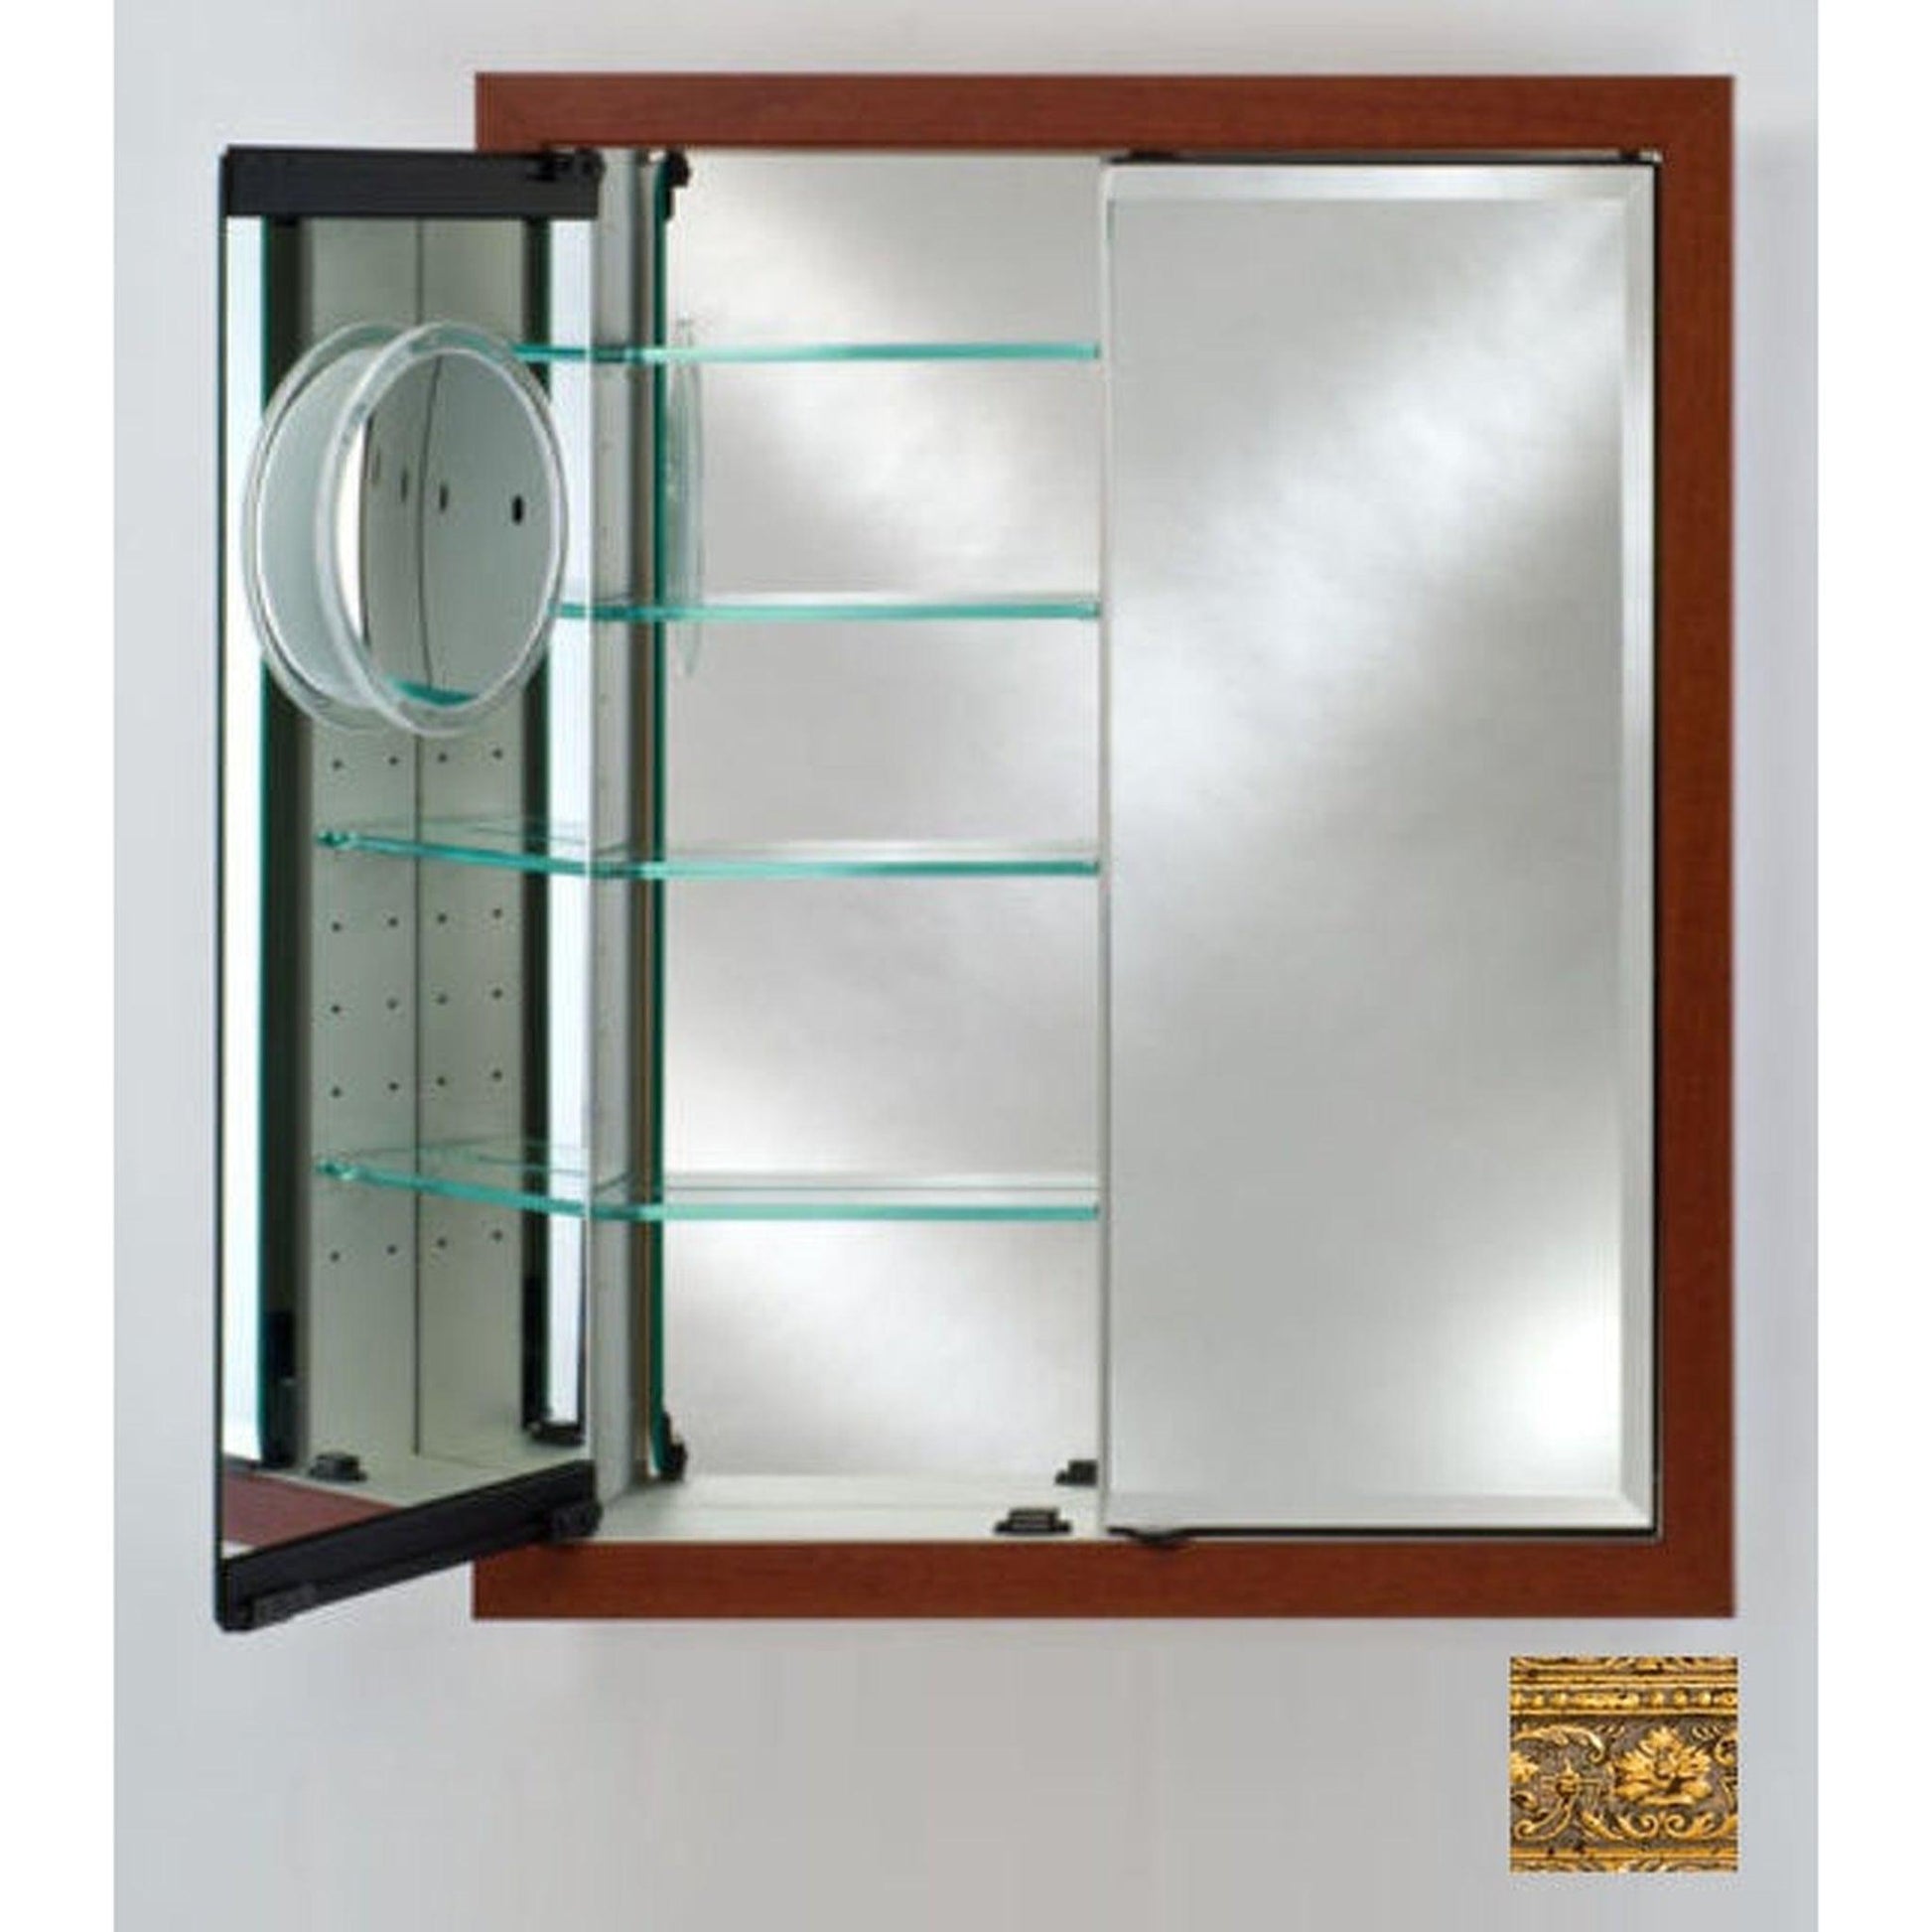 Afina Signature 31" x 36" Regal Antique Gold Recessed Double Door Medicine Cabinet With Beveled Edge Mirror